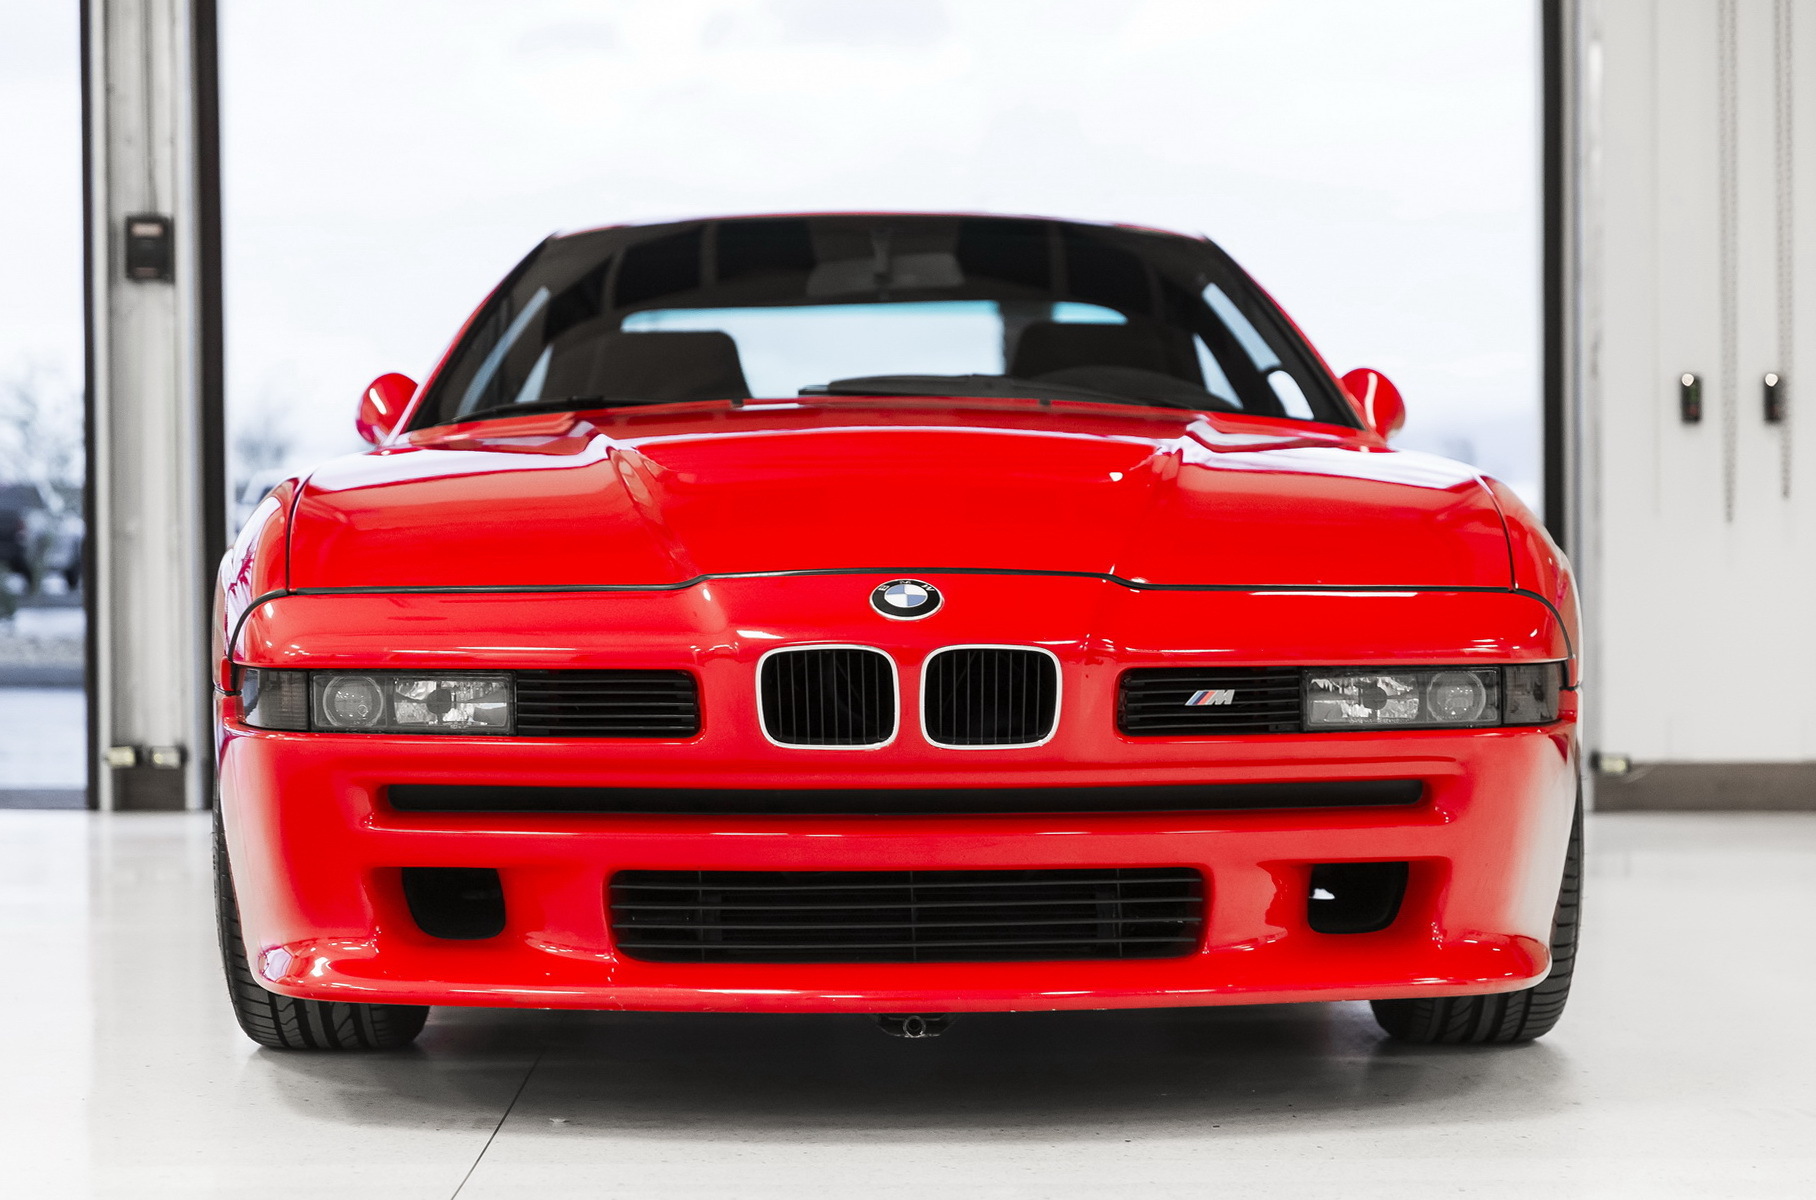 BMW восстановила уникальную M8 1990 года выпуска с мотором V12